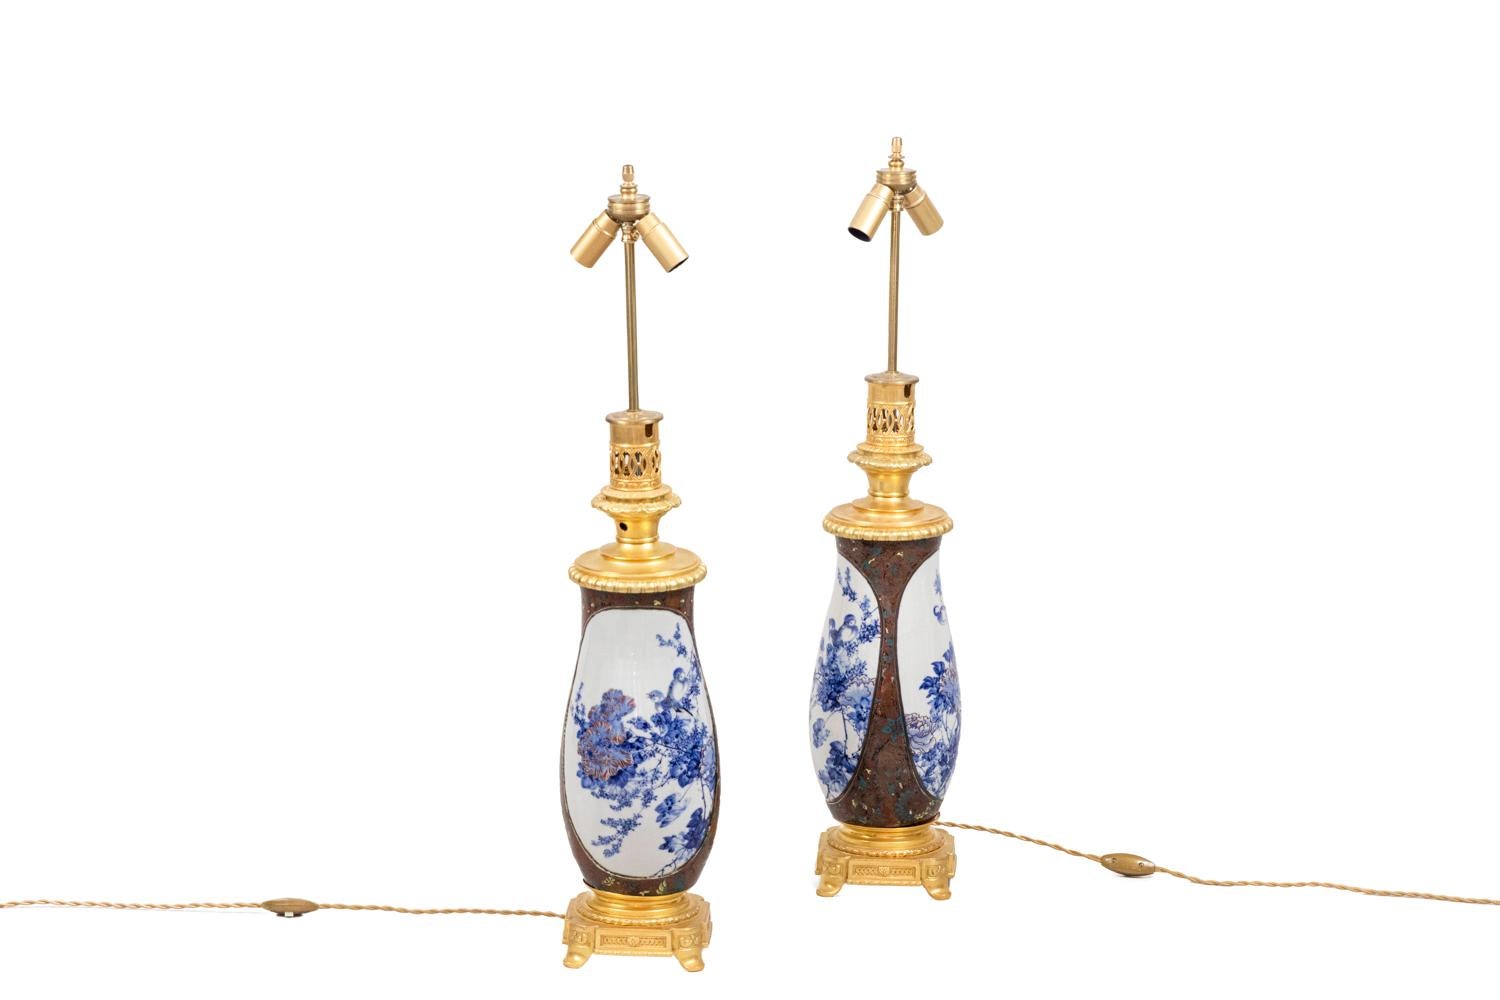 Paire de lampes en porcelaine japonaise en forme de vase.
Décor sur fond brun et motifs stylisés de fleurs, de feuillages et d'oiseaux dans les tons bleu, jaune et rouge. Deux grands cartouches à fond blanc avec un décor bleu figurant des pivoines,